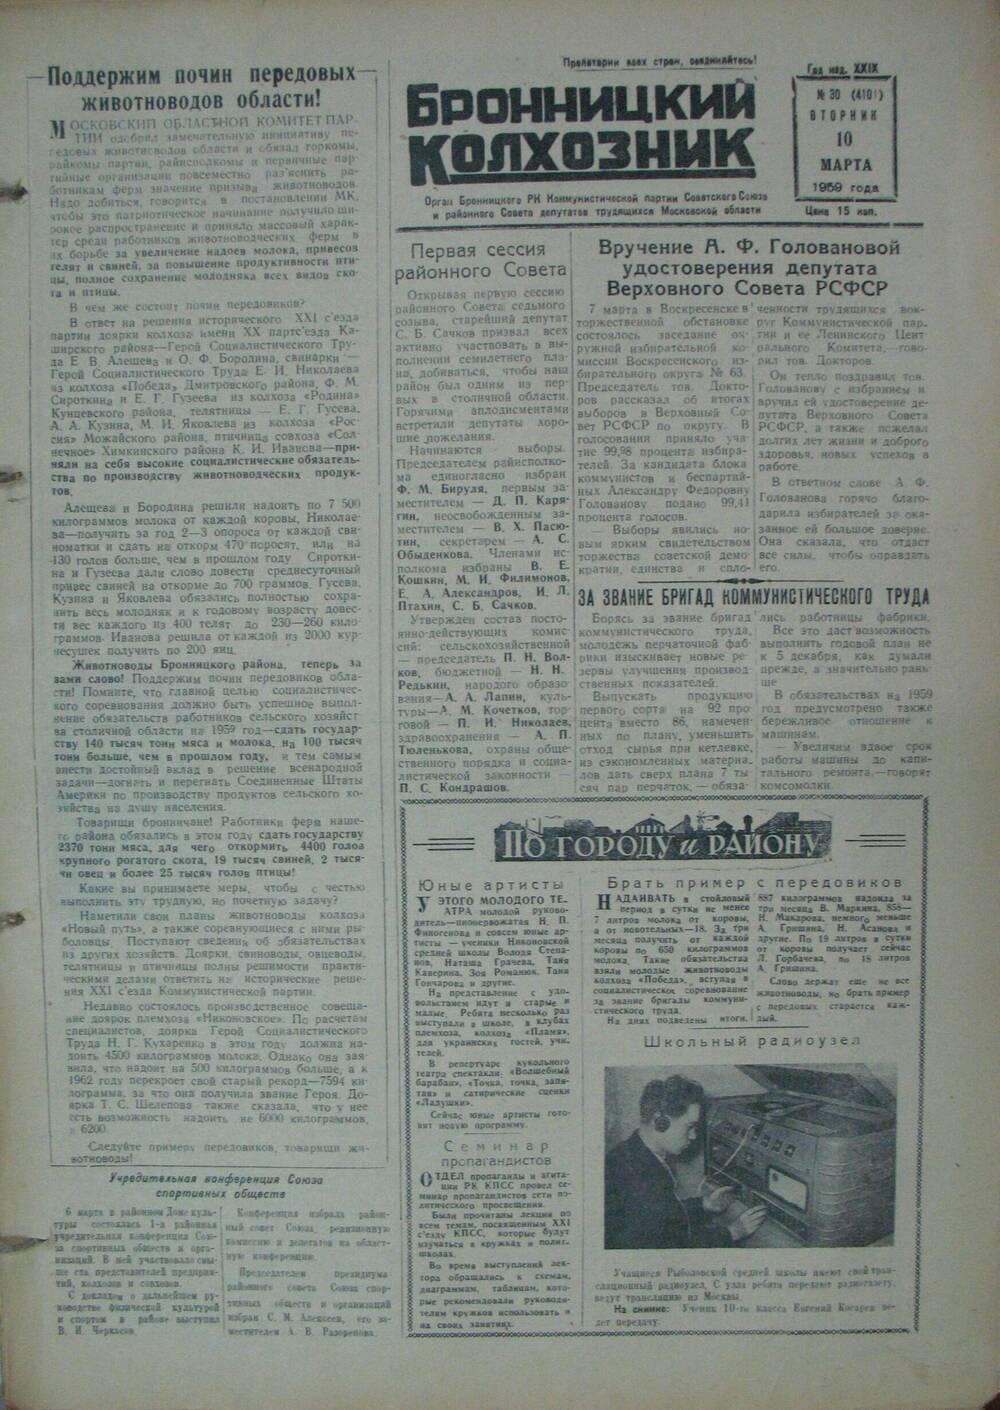 Бронницкий колхозник,  газета № 30 от 10 марта 1959г